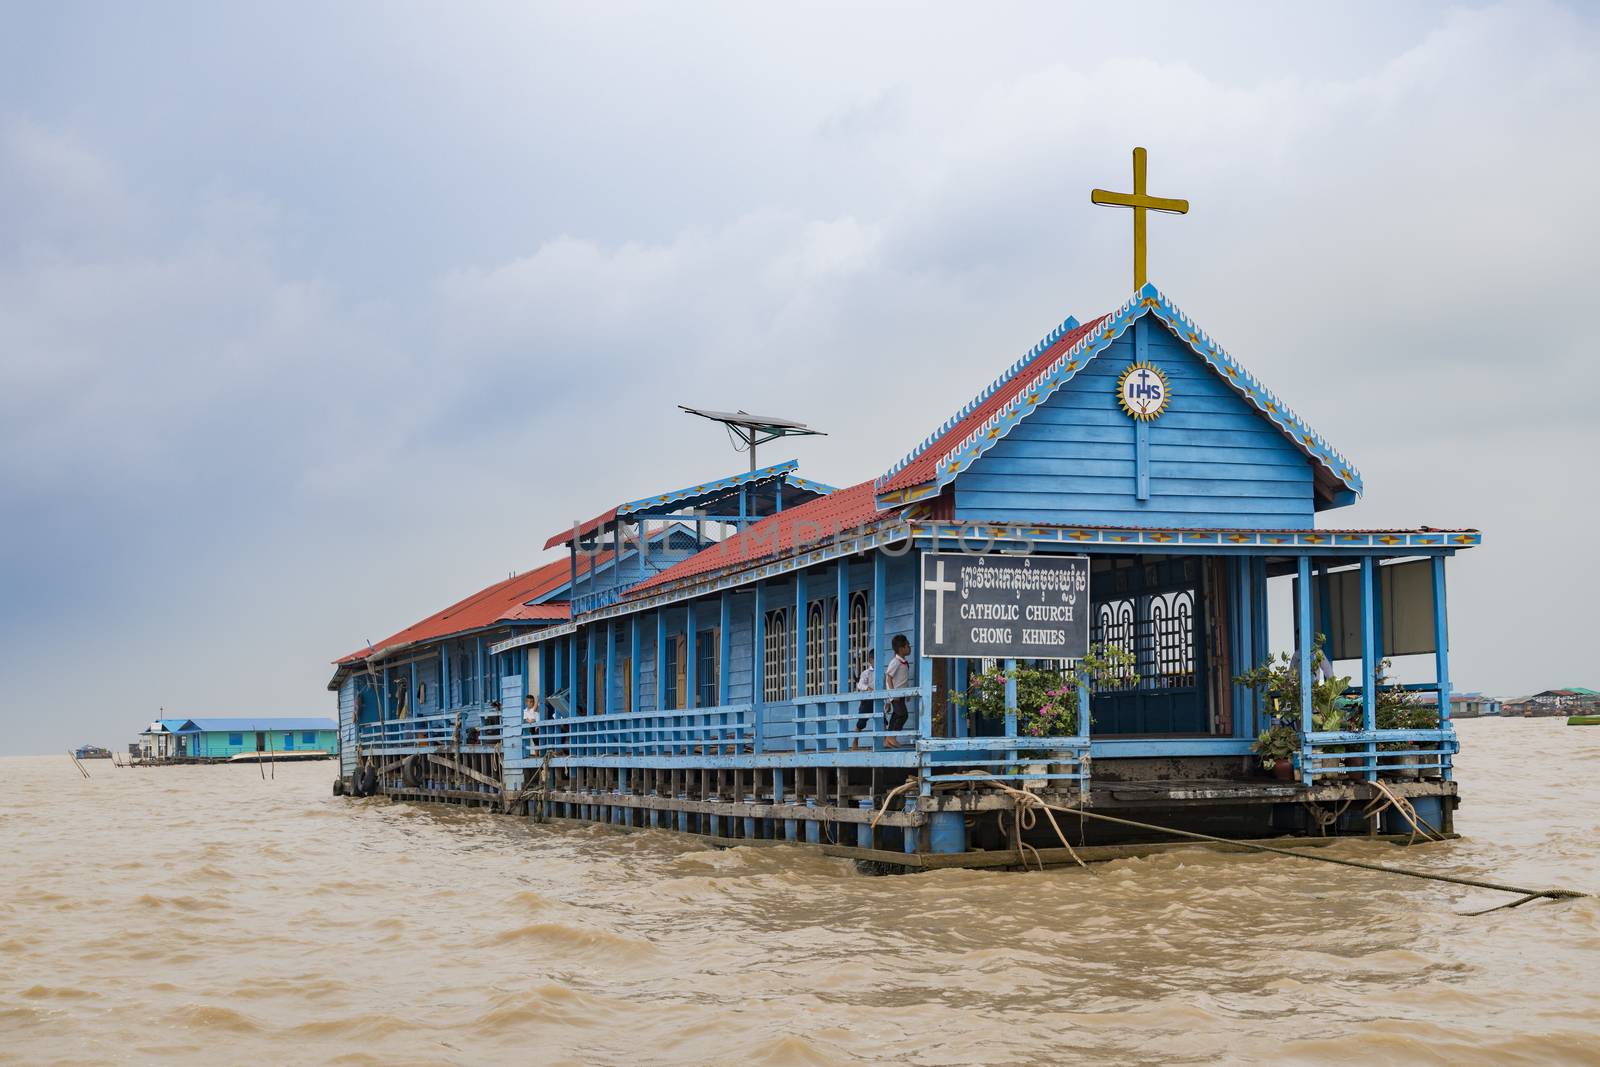 Chong Khnies (or Khneas) Catholic Church, Tonle Sap, Cambodia by GABIS